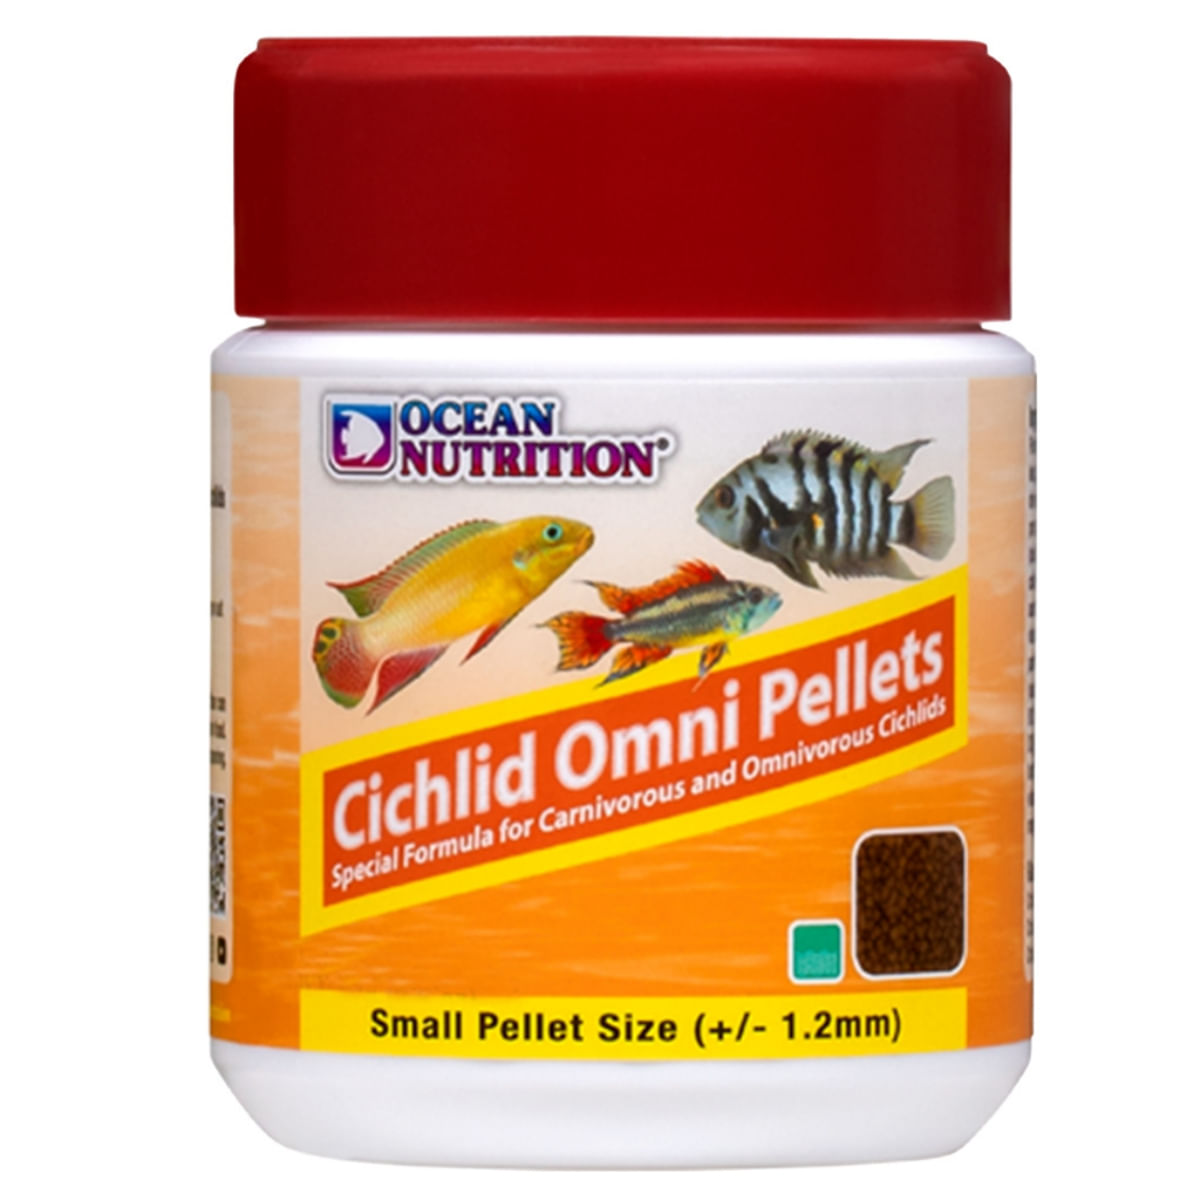 OCEAN NUTRITION Cichlid Omni Pellets Small, 200g 200g